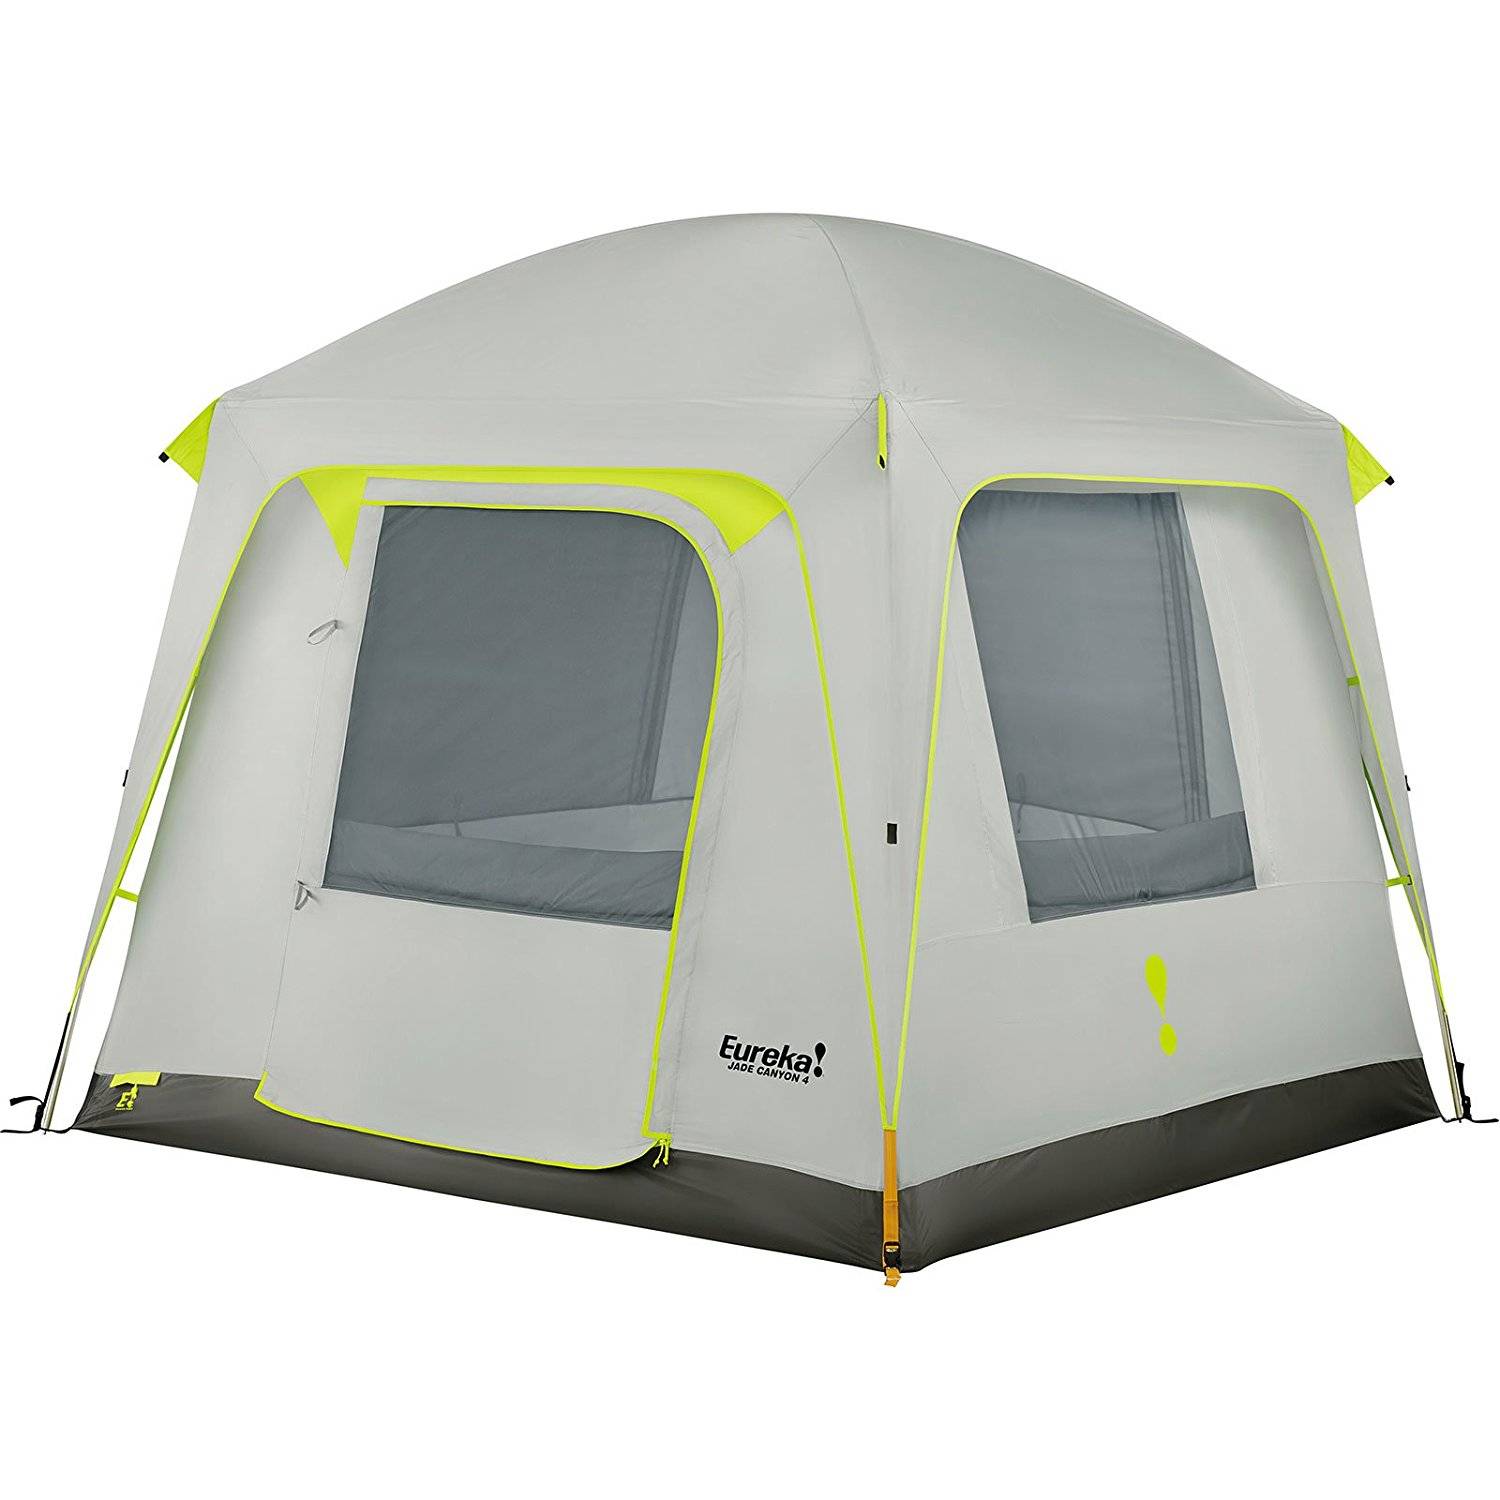 Eureka! Jade Canyon 4 Person Camping Tent